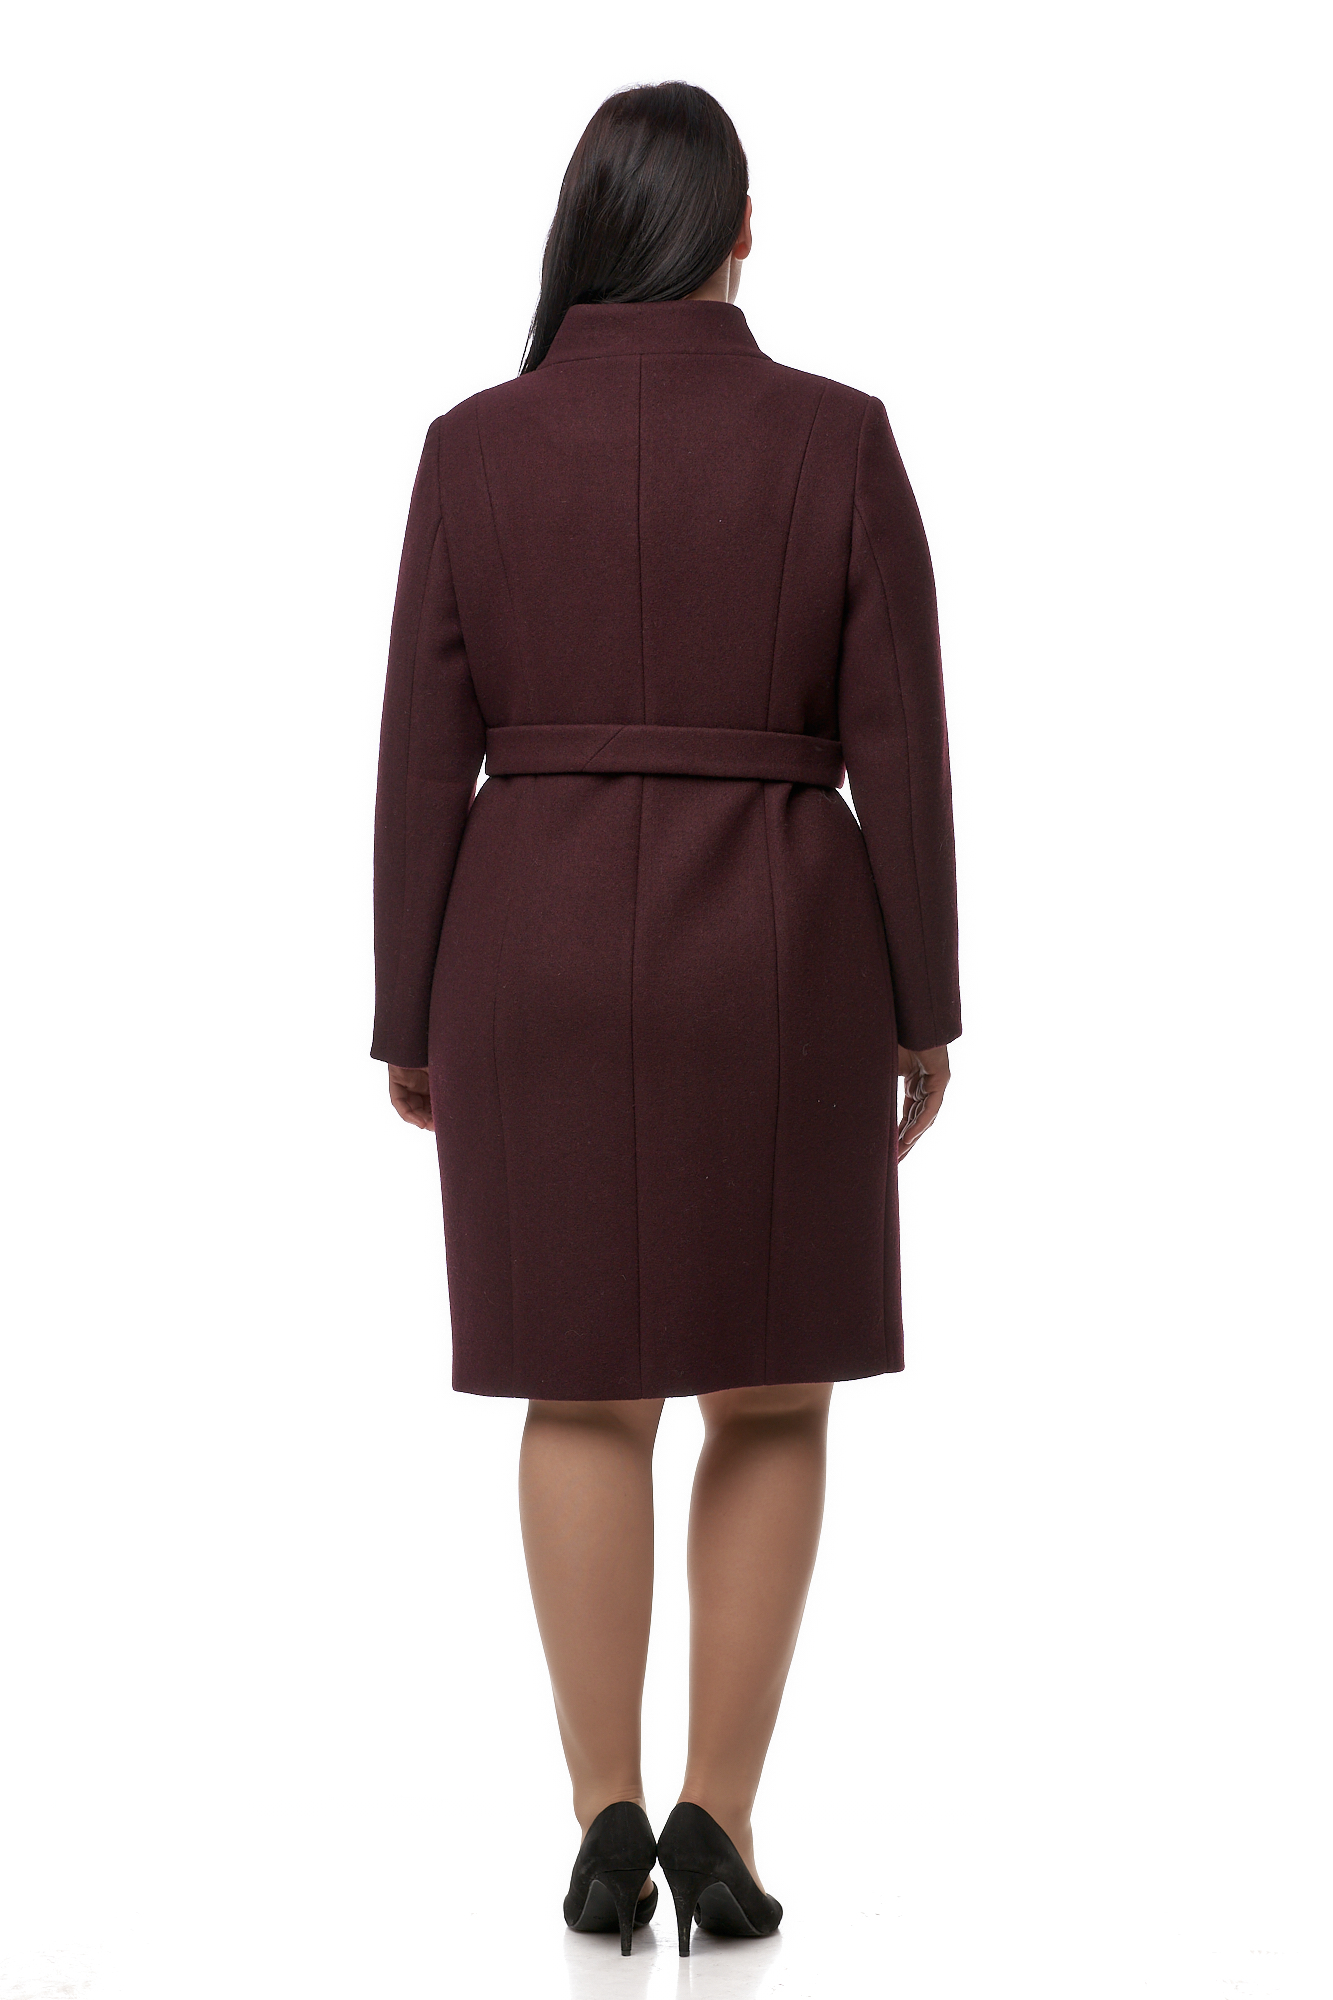 Женское пальто из текстиля с воротником 8010392-2